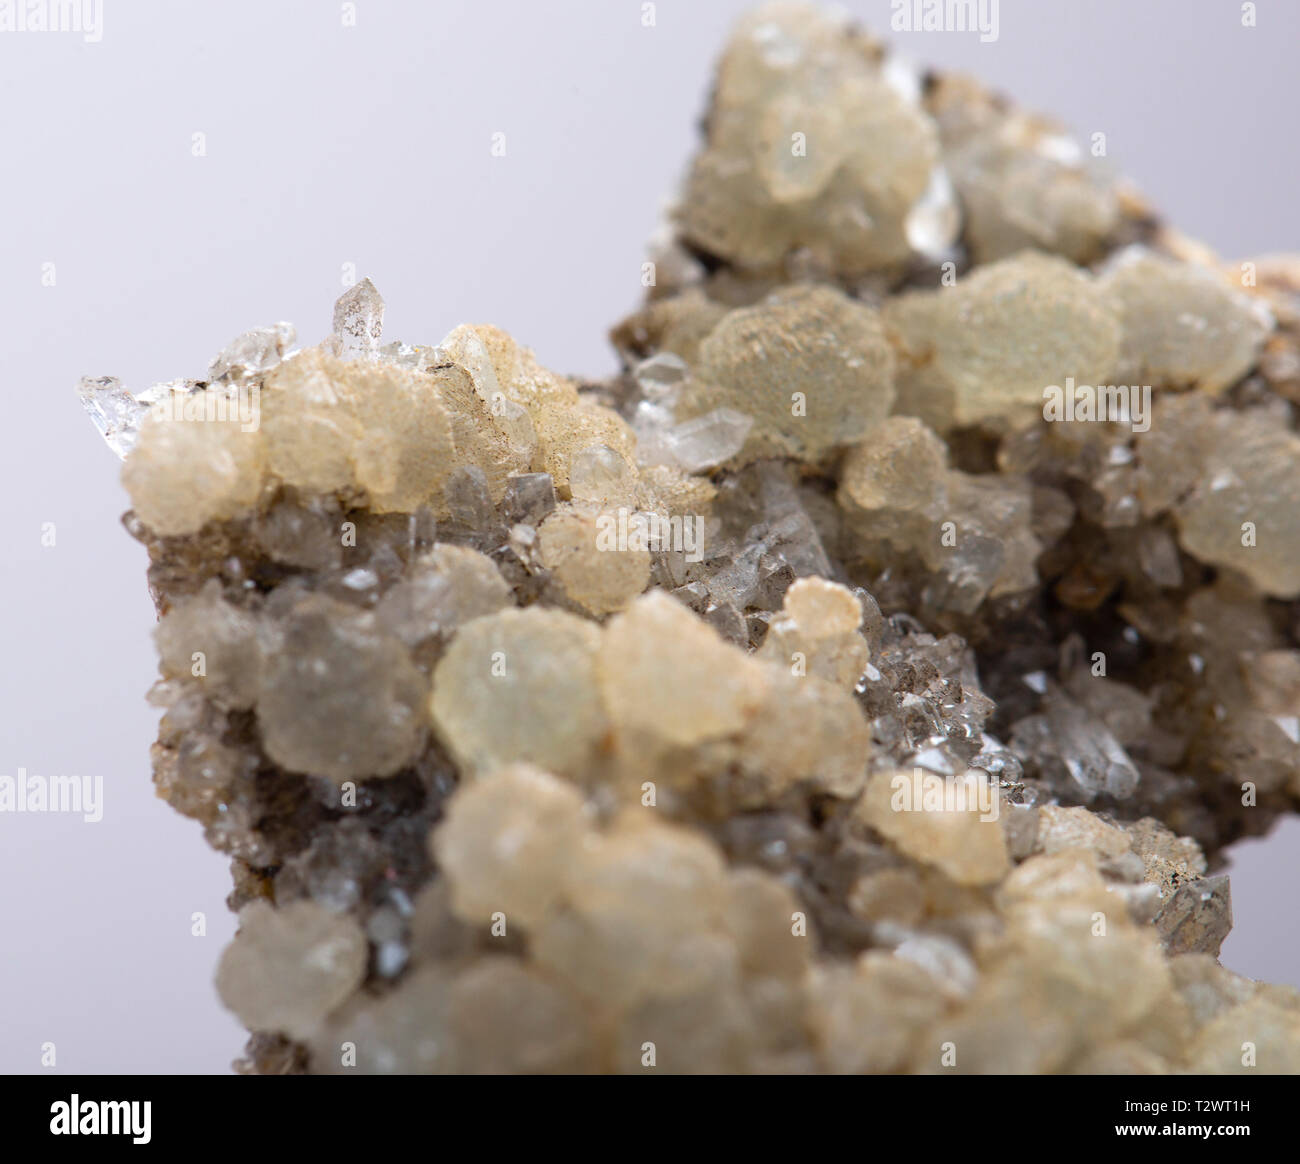 prehnite mineral specimen Stock Photo